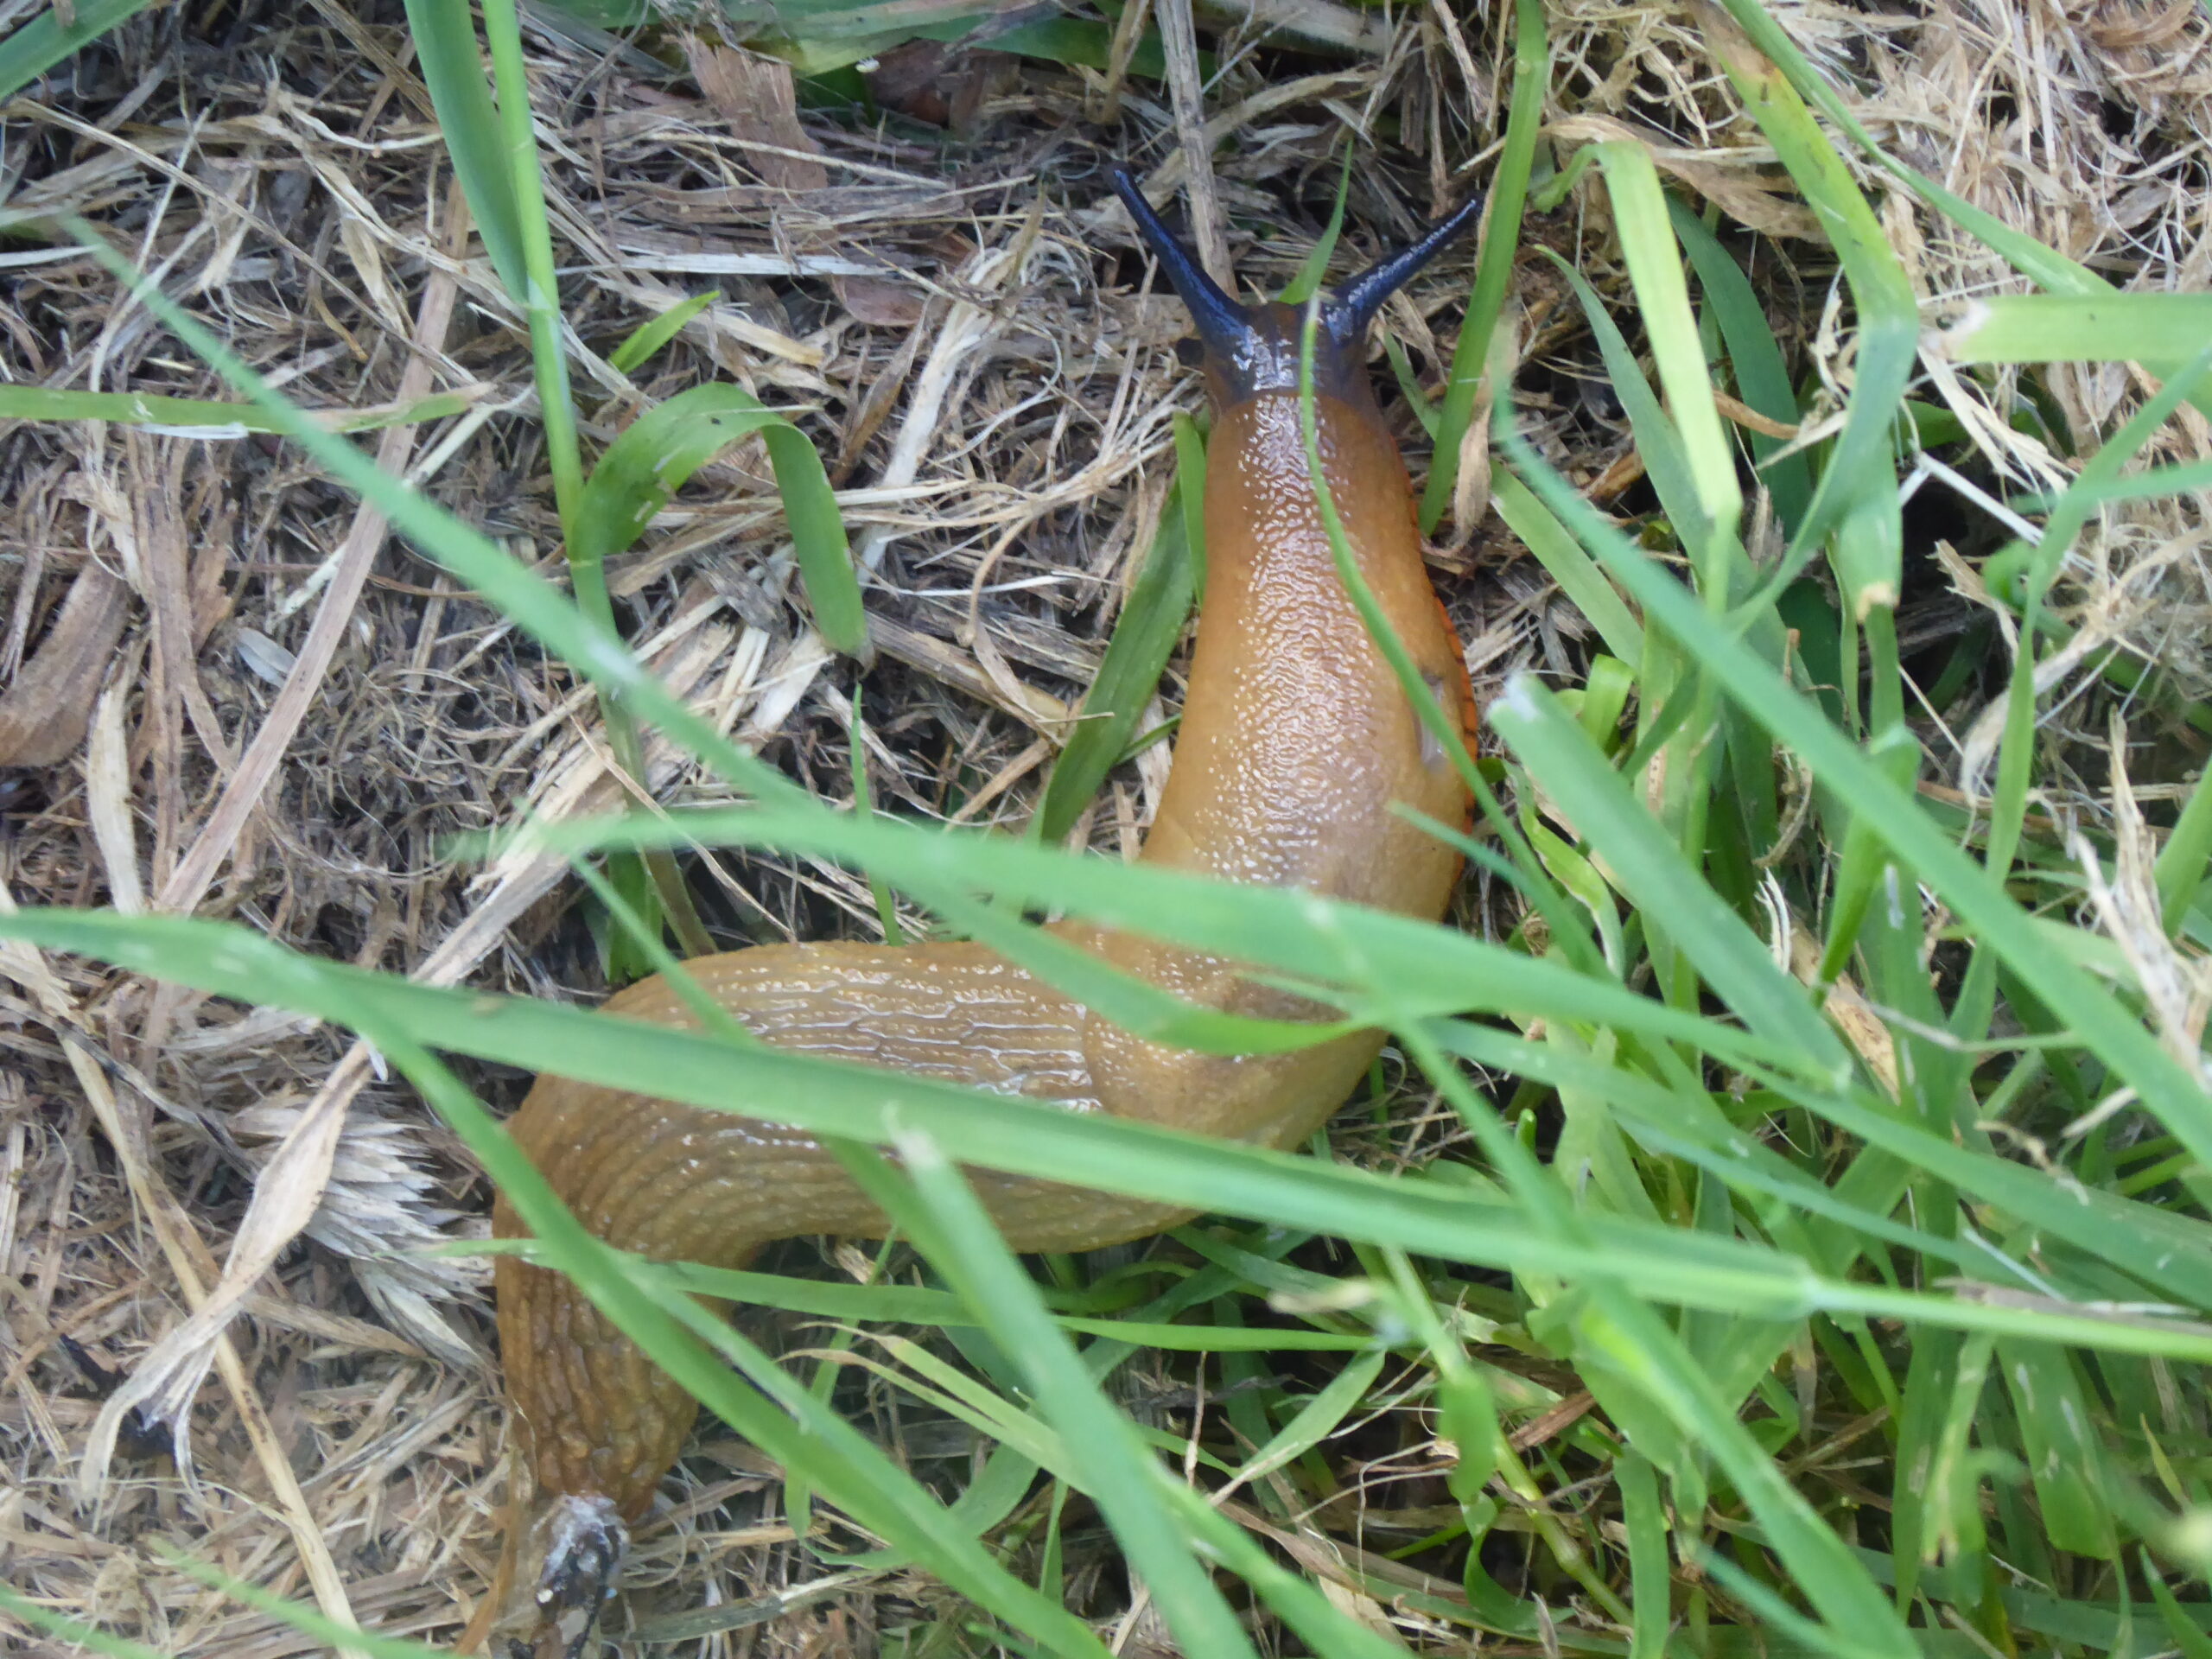 Two slugs – Spanish Slug and Large Red Slug